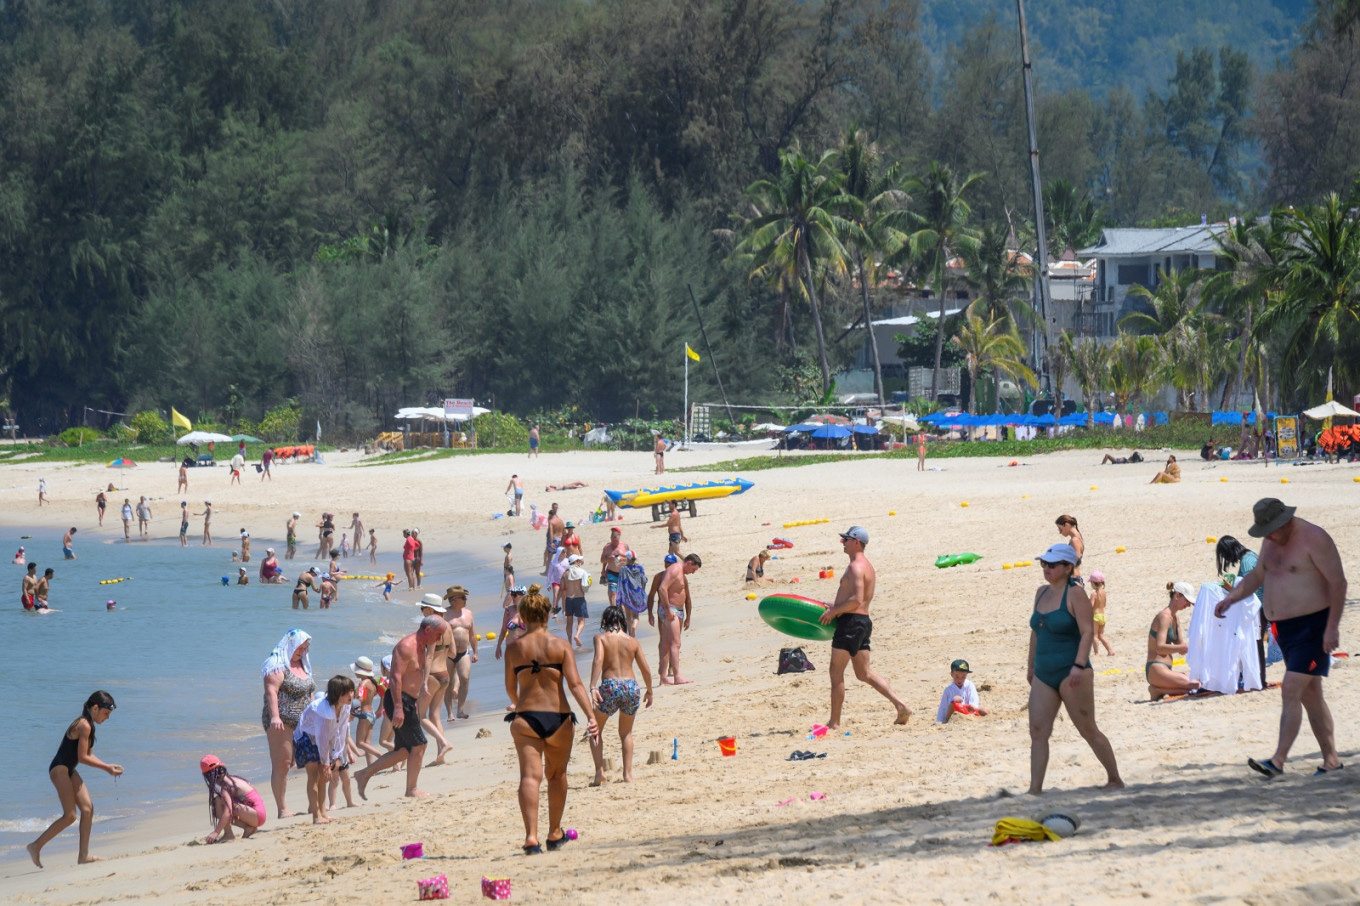 Thái Lan cho phép khách du lịch ở lại dài ngày trên đảo Phuket từ tháng 10 - Ảnh 1.